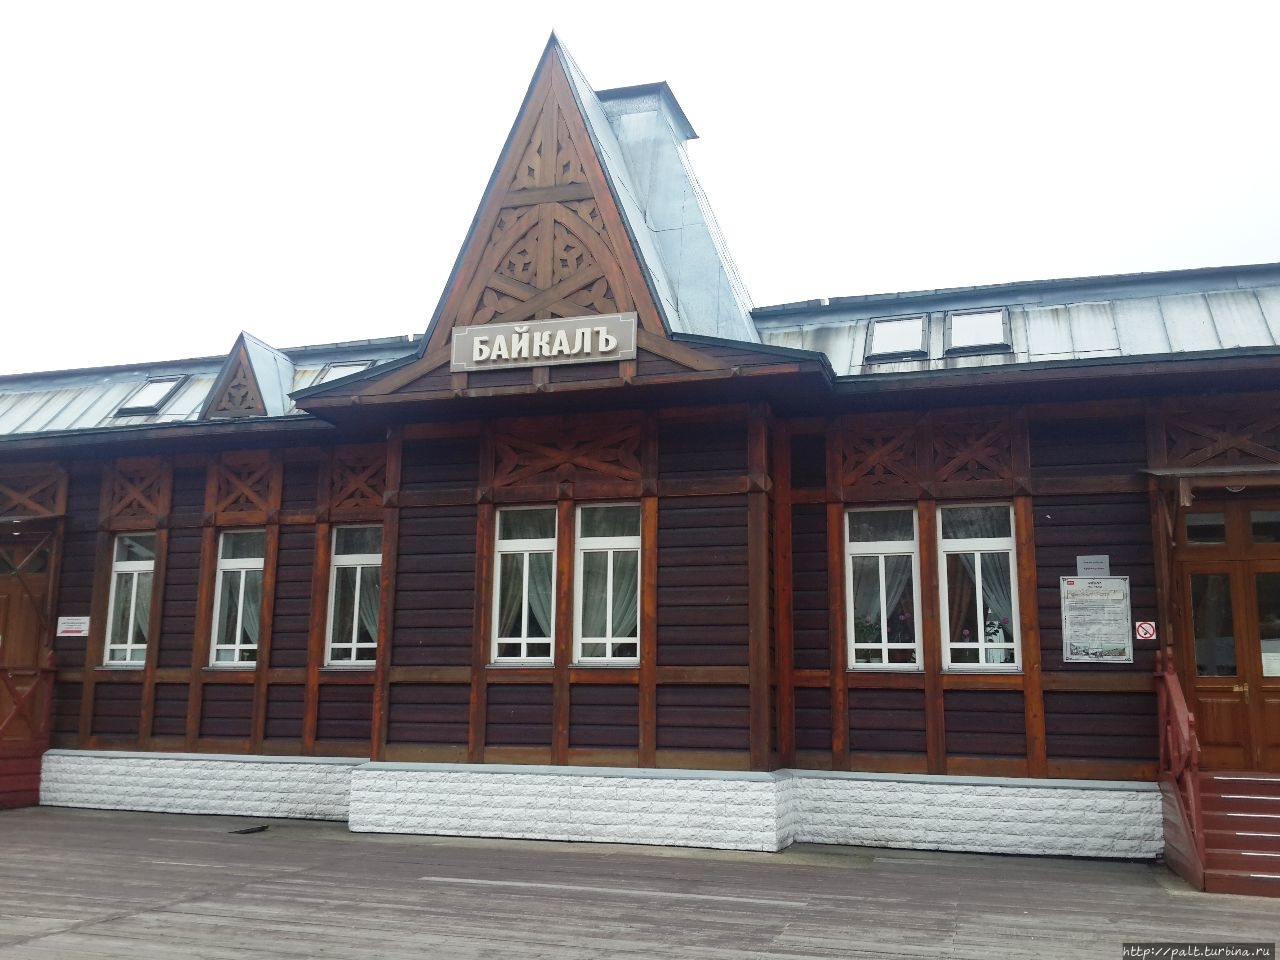 Вокзал Порта Байкал. Исто